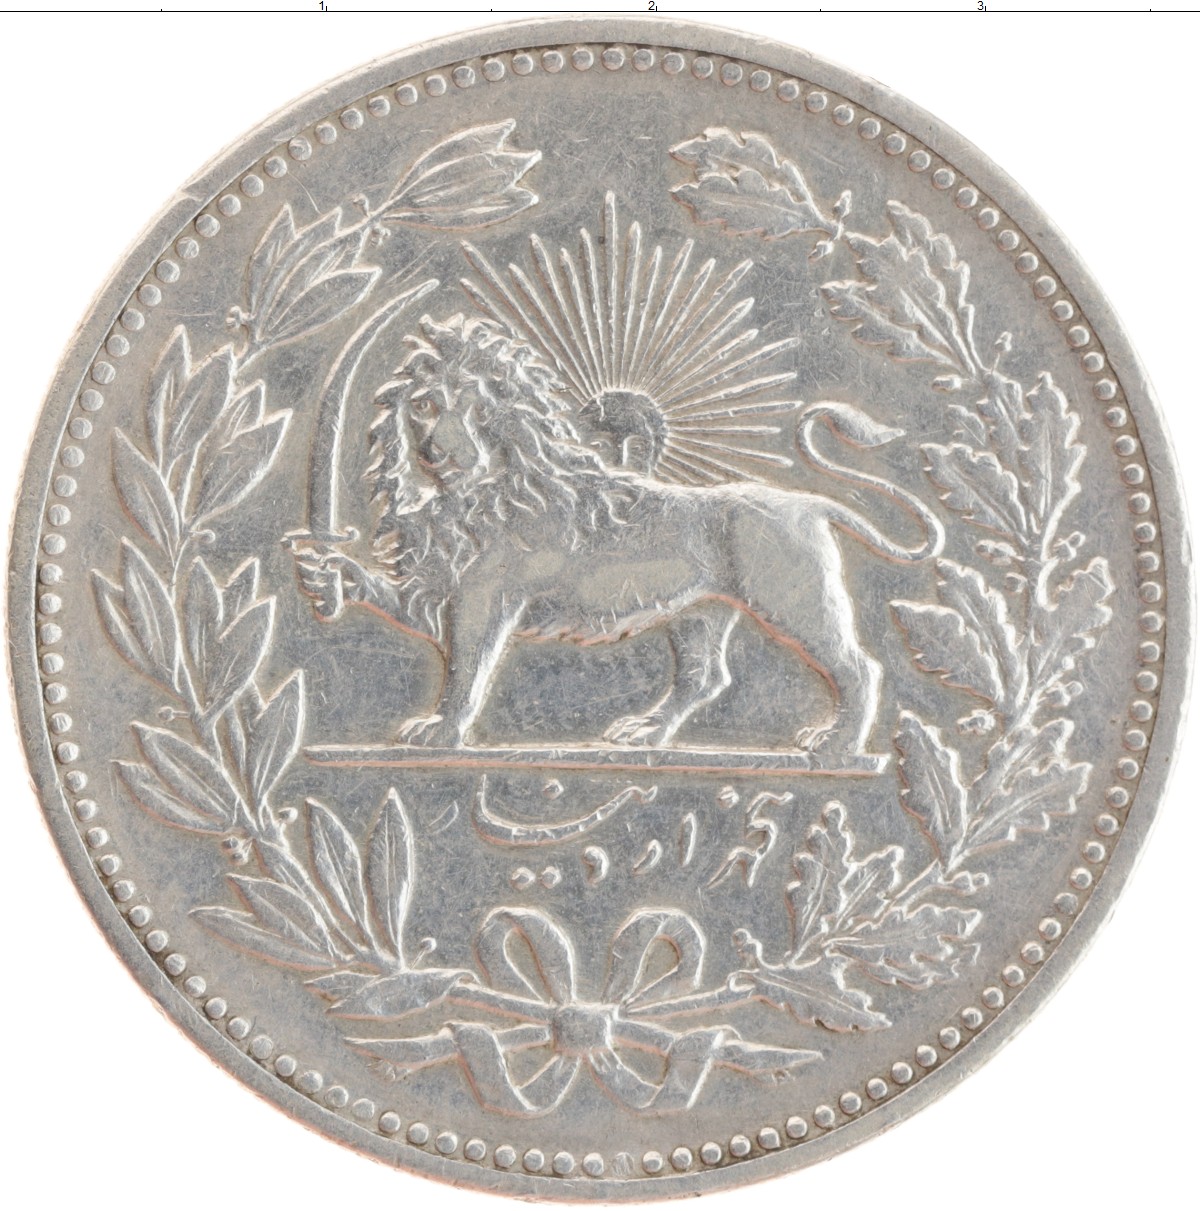 Монеты ирана каталог с фото